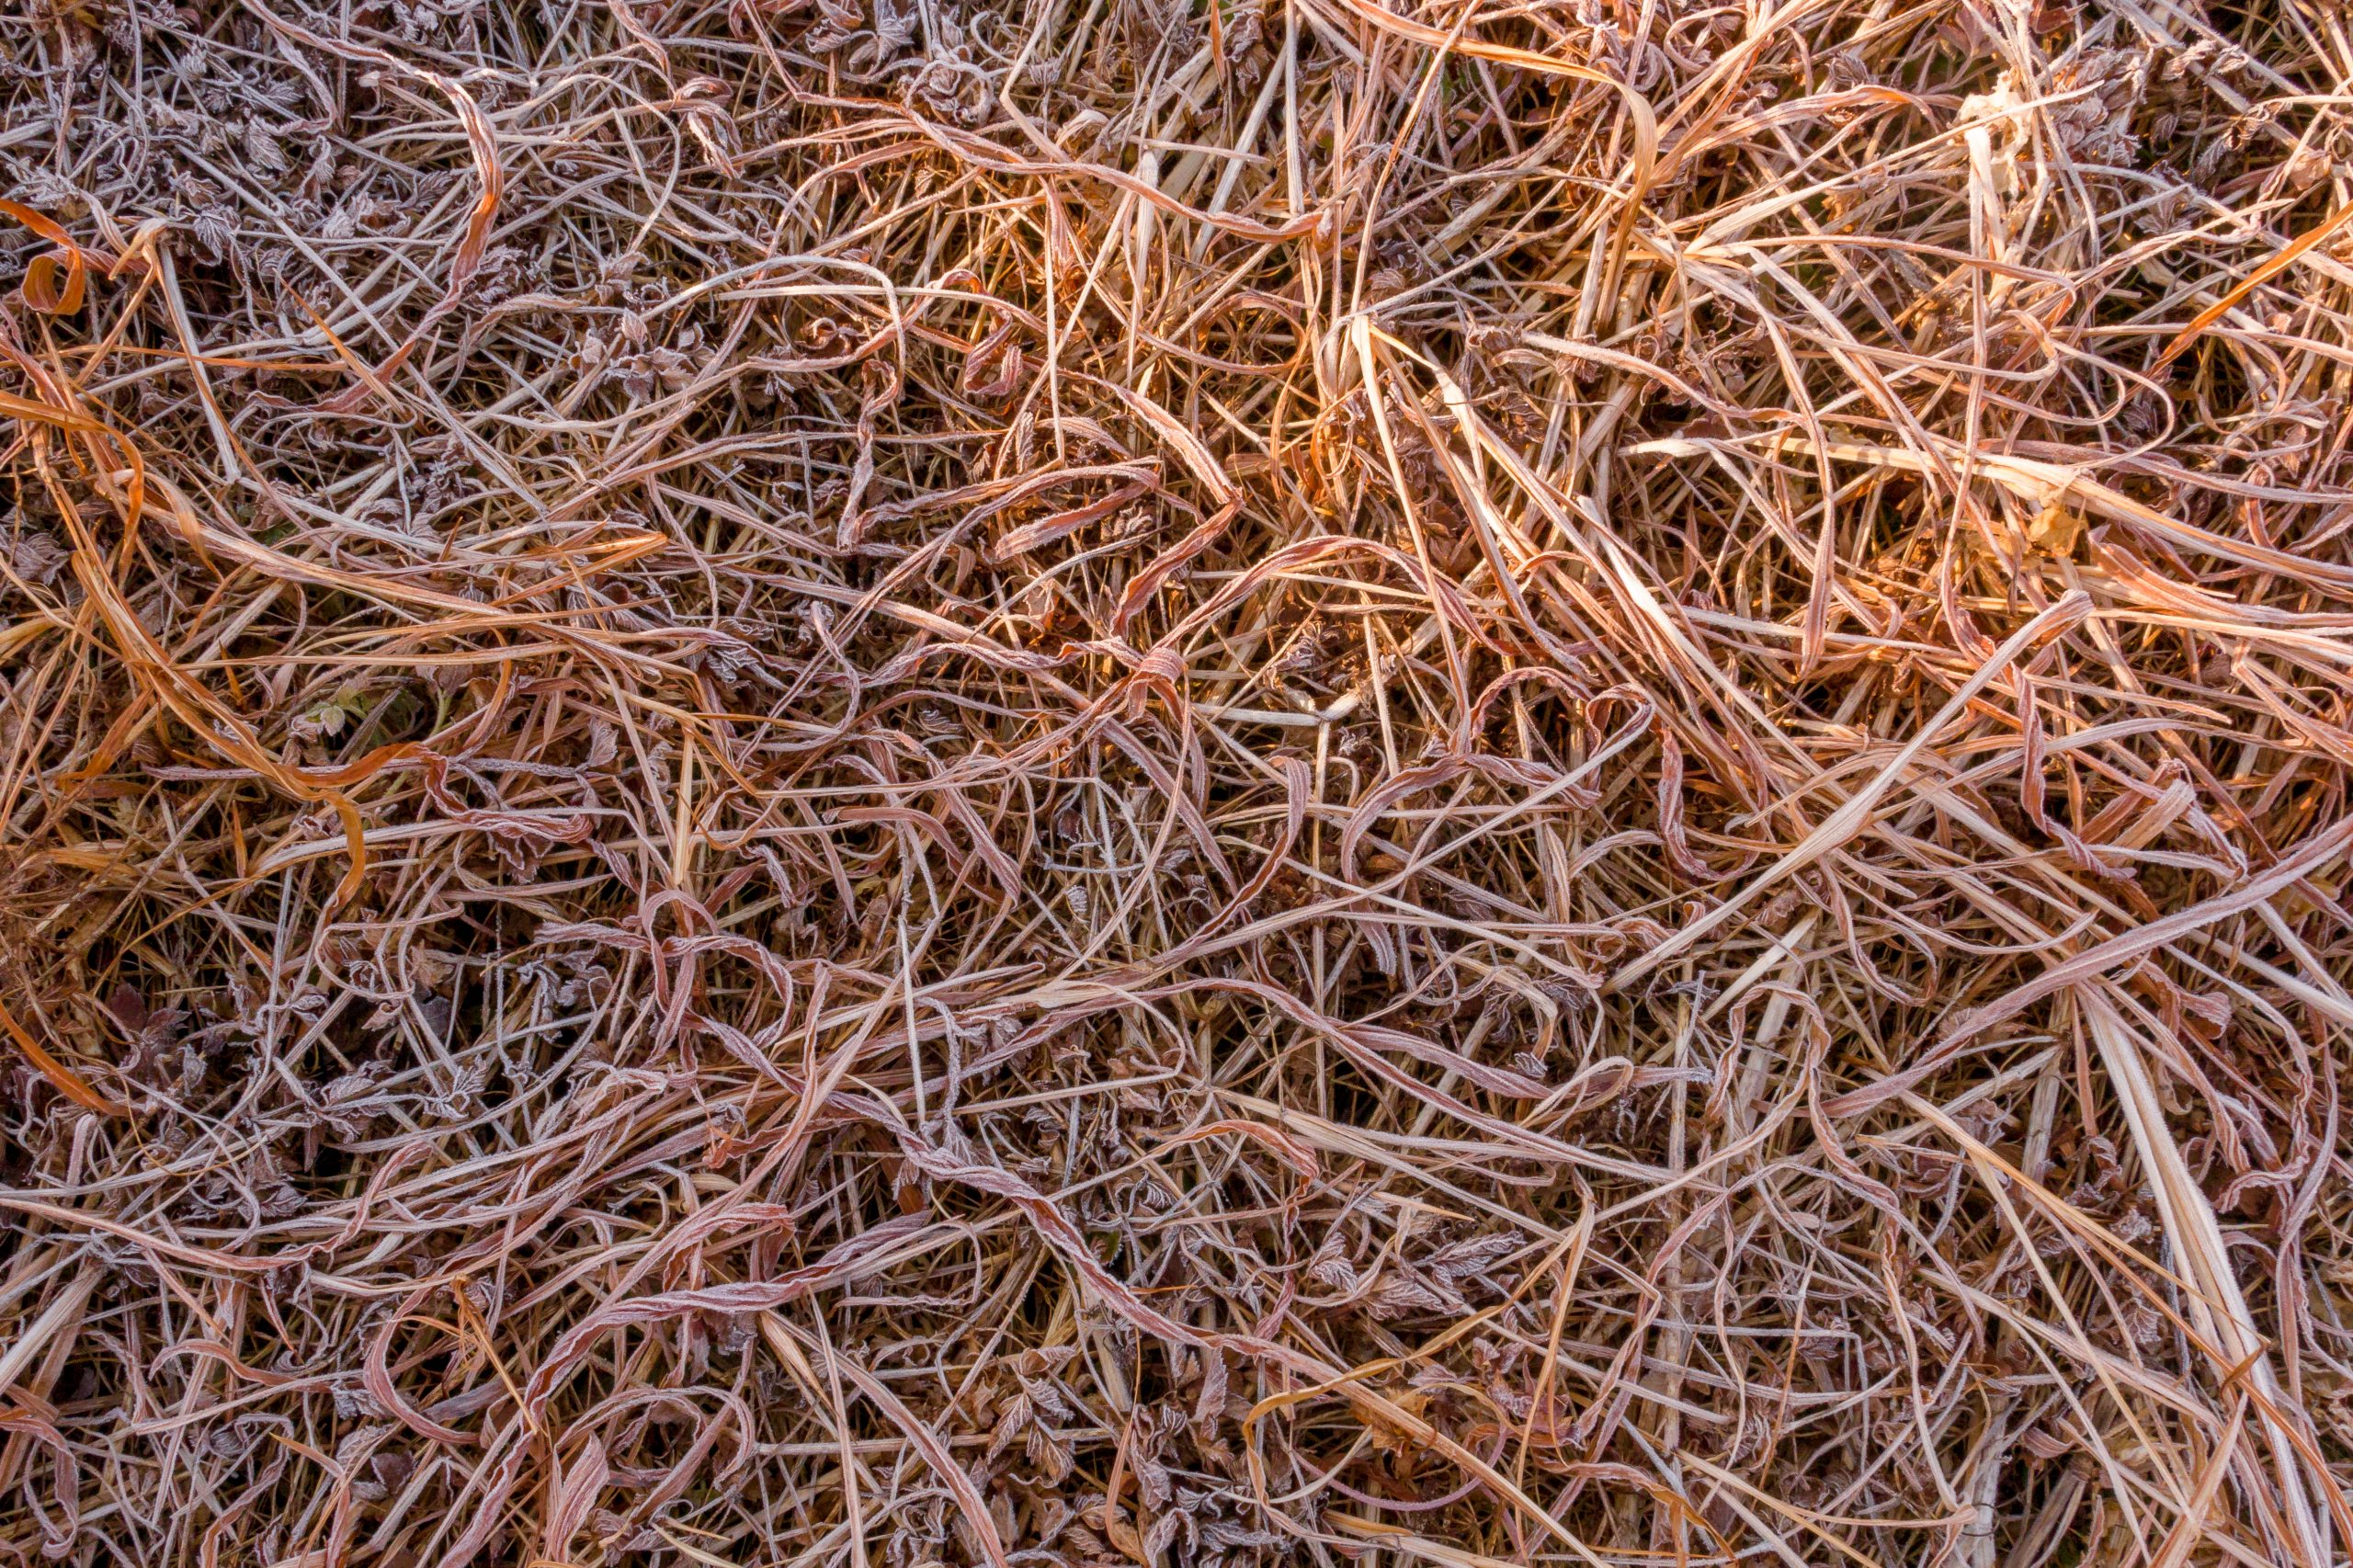 Grass straws on ground